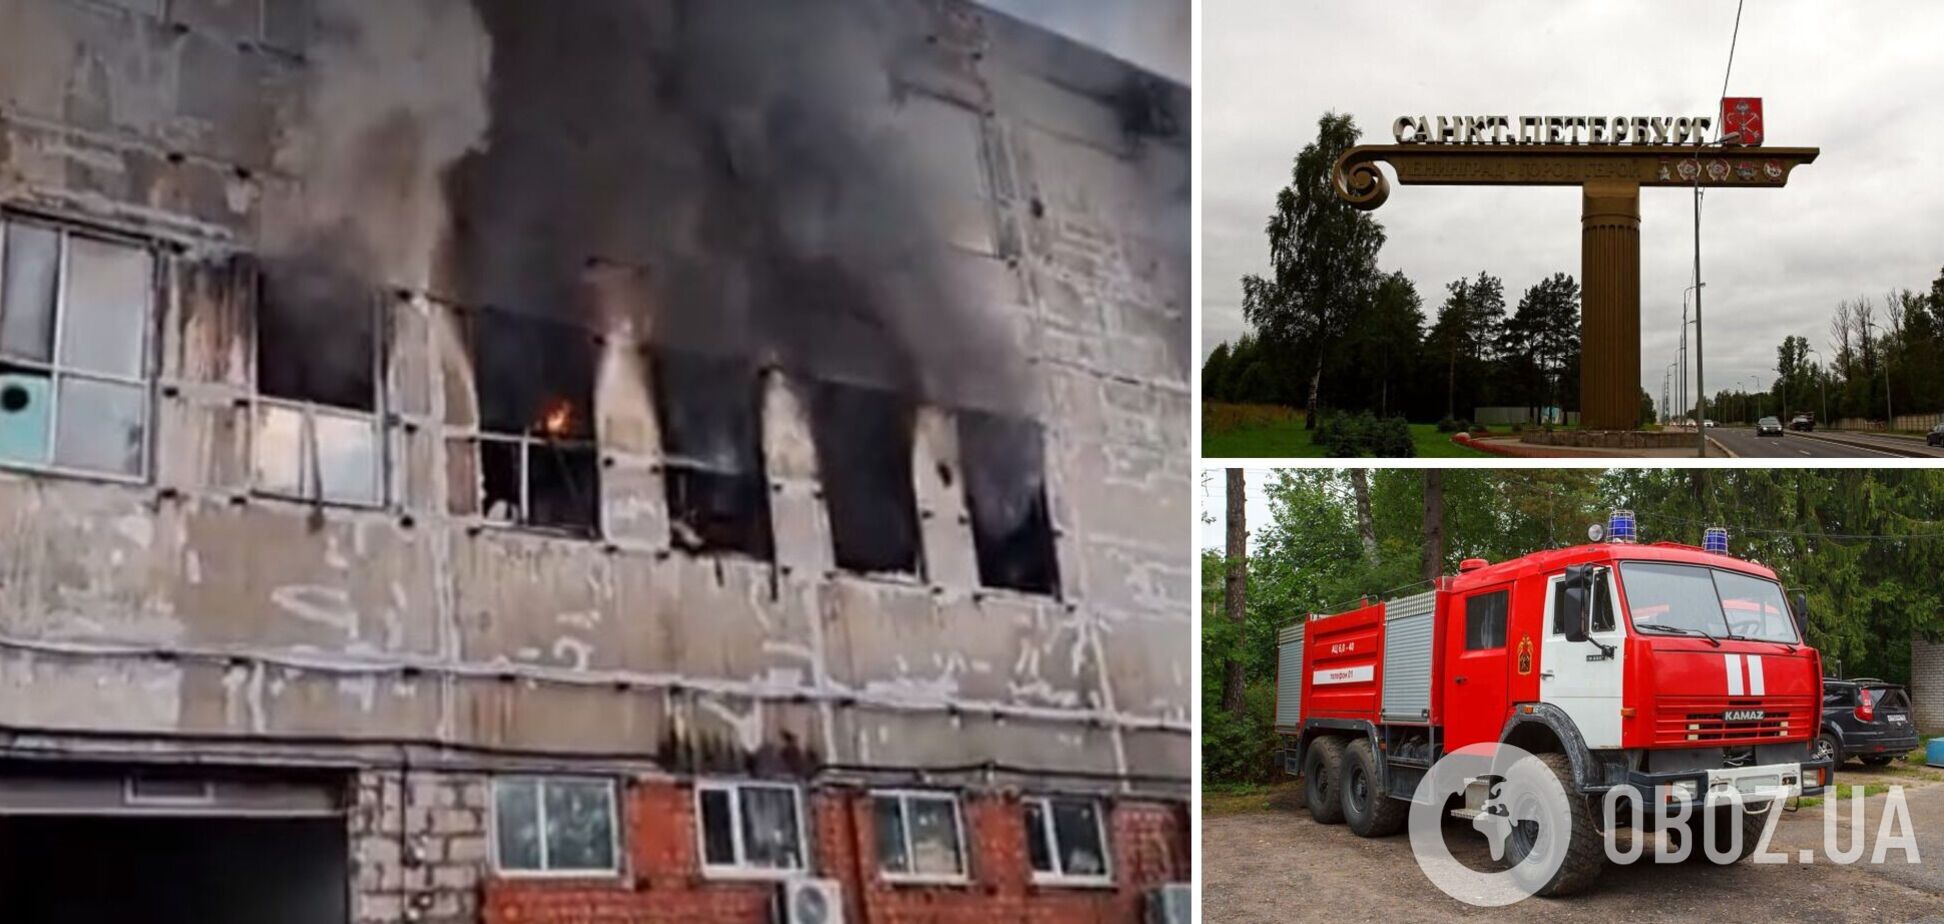 В Санкт-Петербурге произошел масштабный пожар: горит производственно-складское здание. Фото и видео